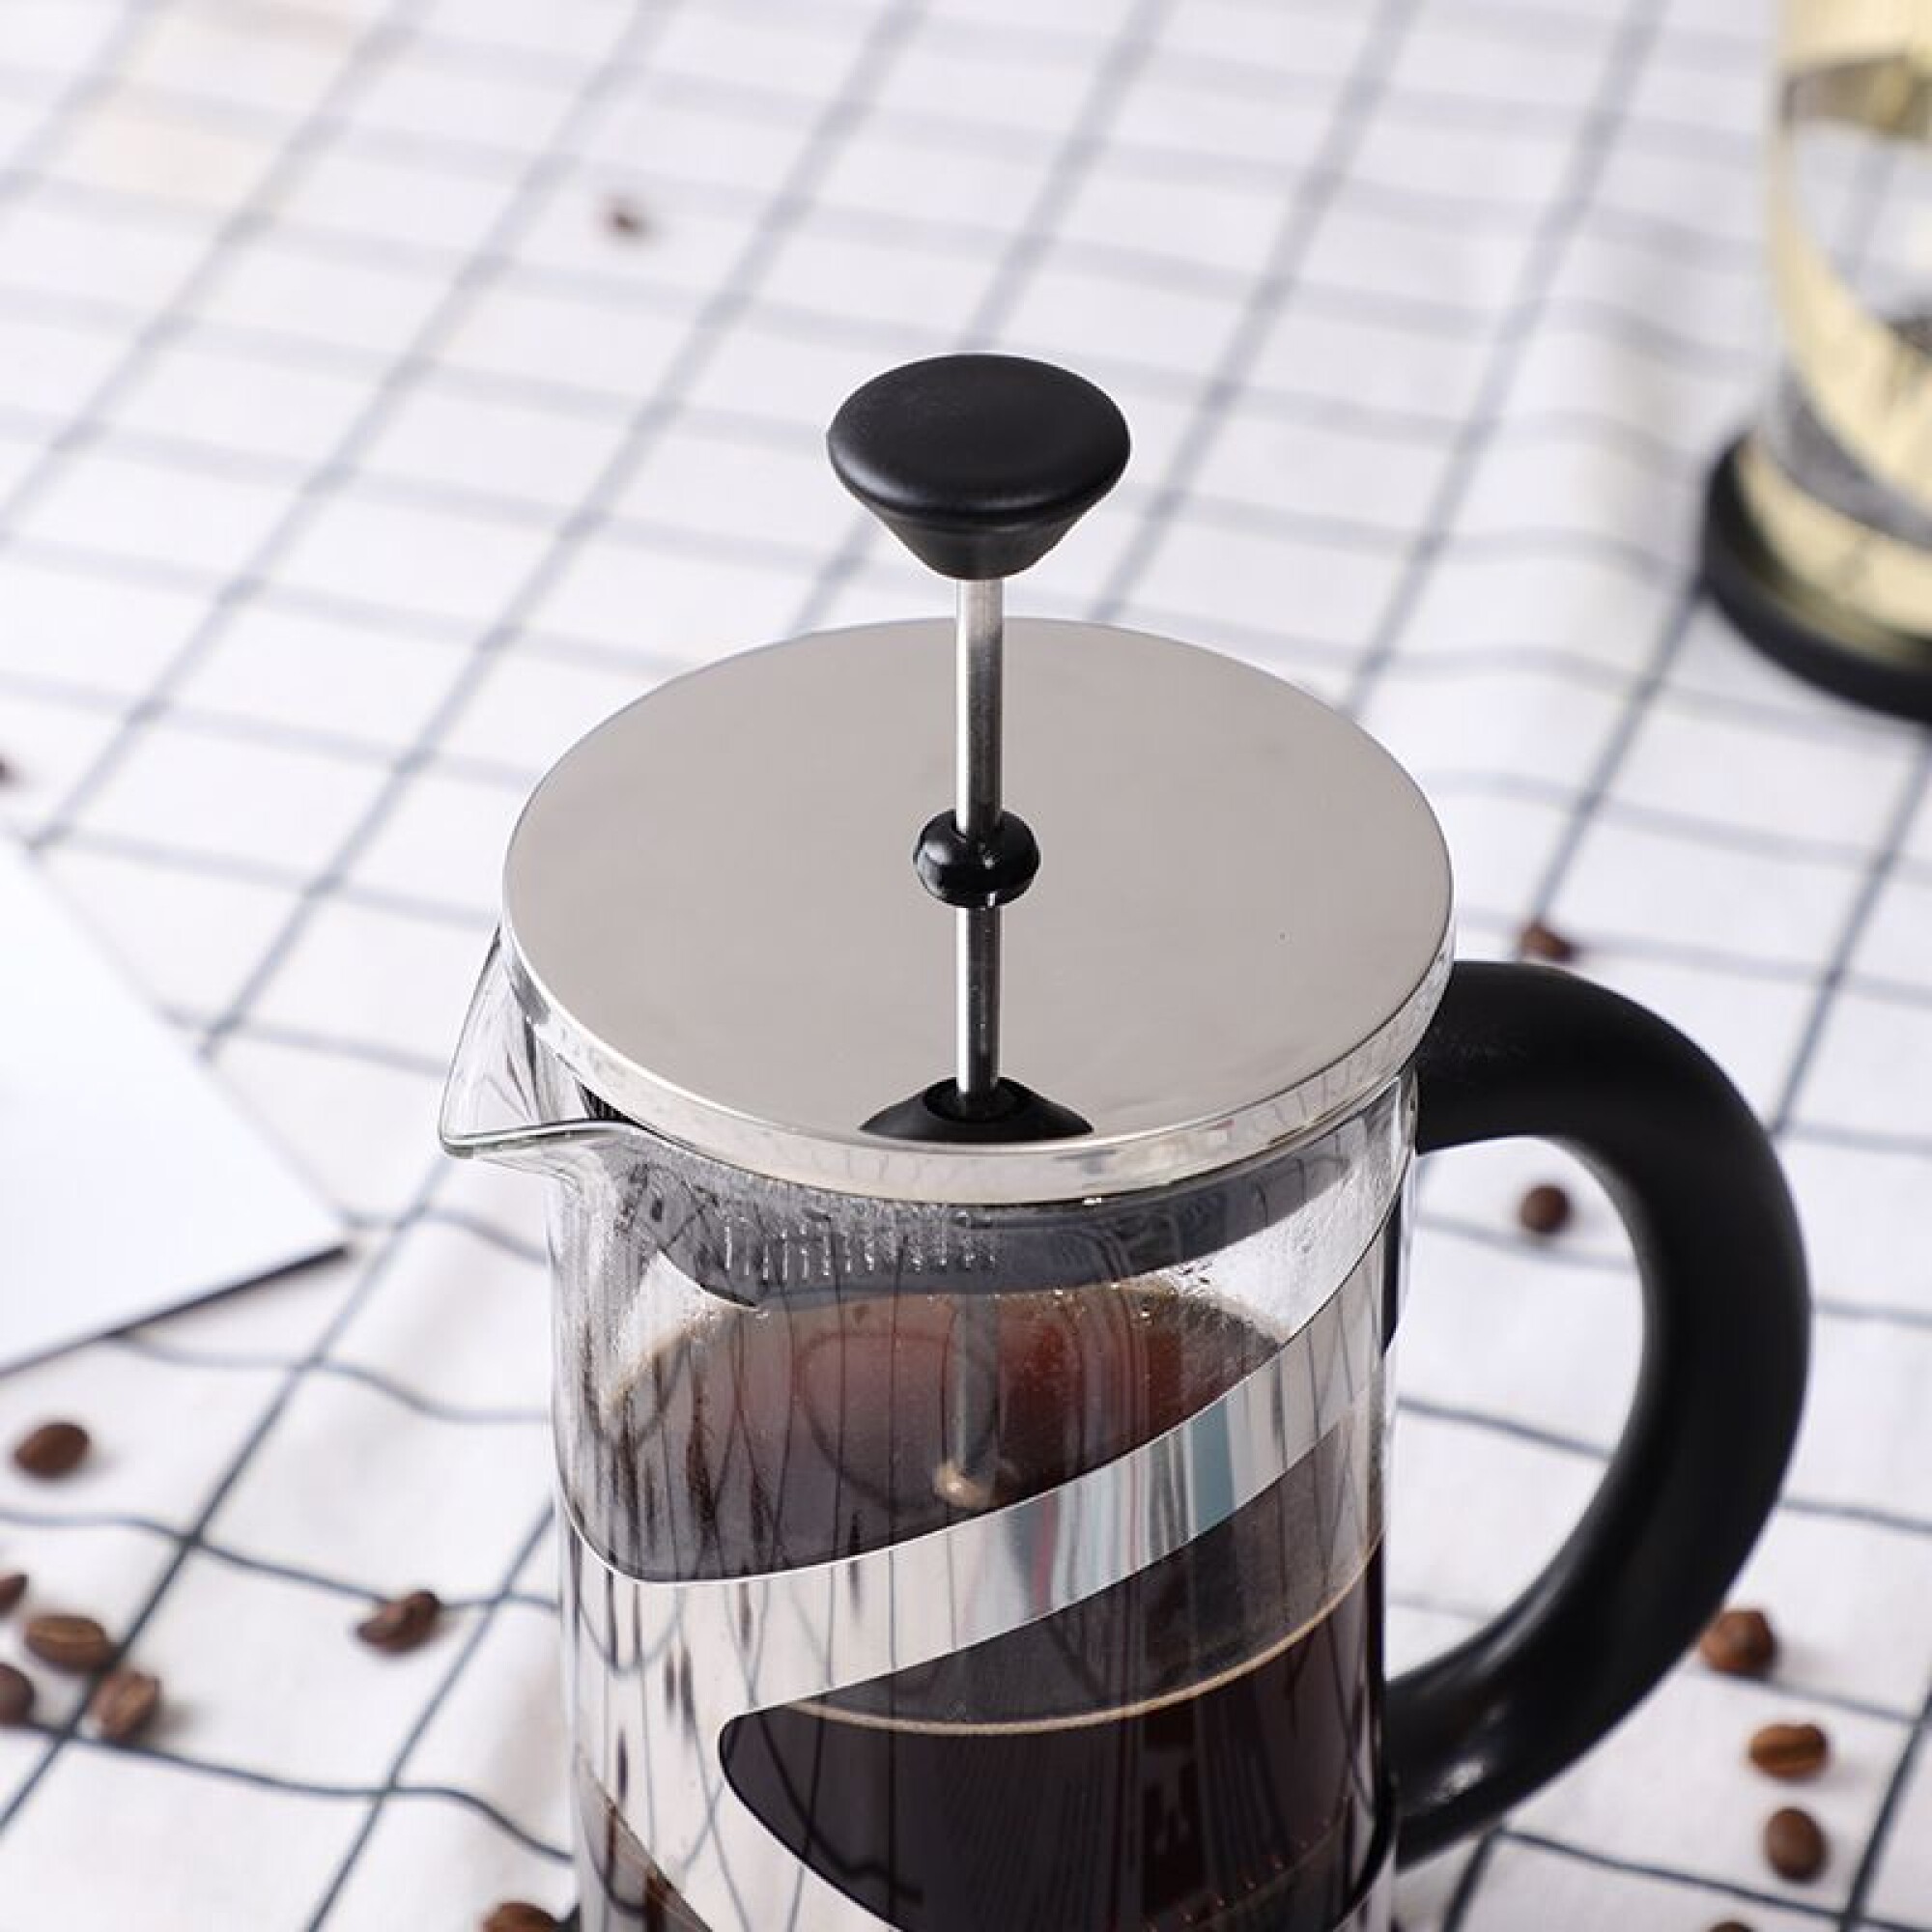 Cómo infusionar café en una cafetera de embolo